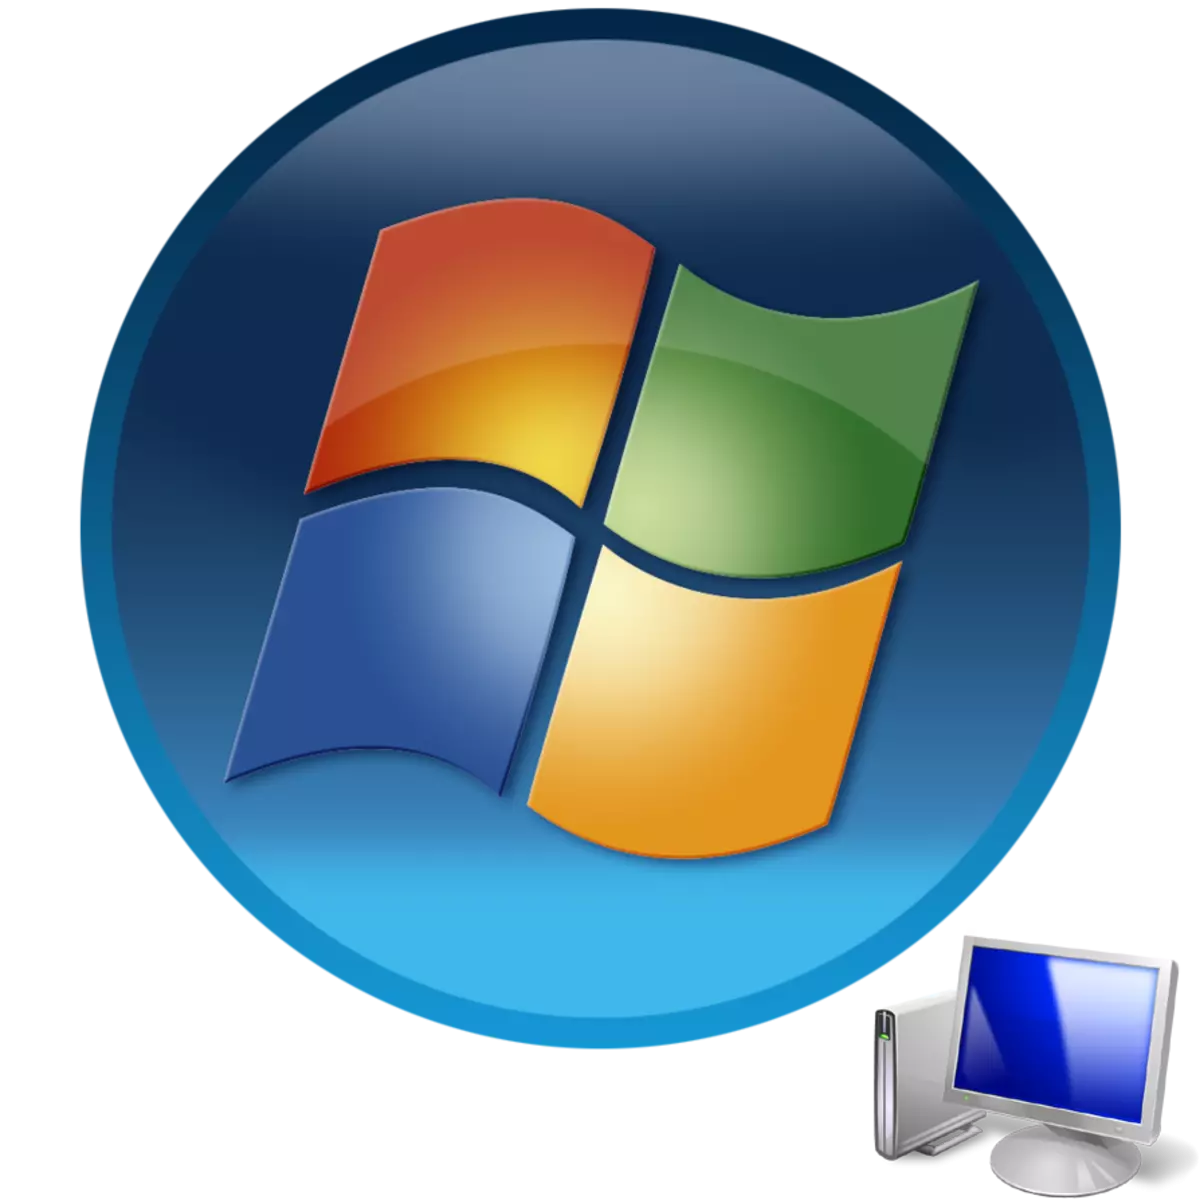 Tietokoneen käynnistäminen Windows 7 -käyttöjärjestelmän avulla